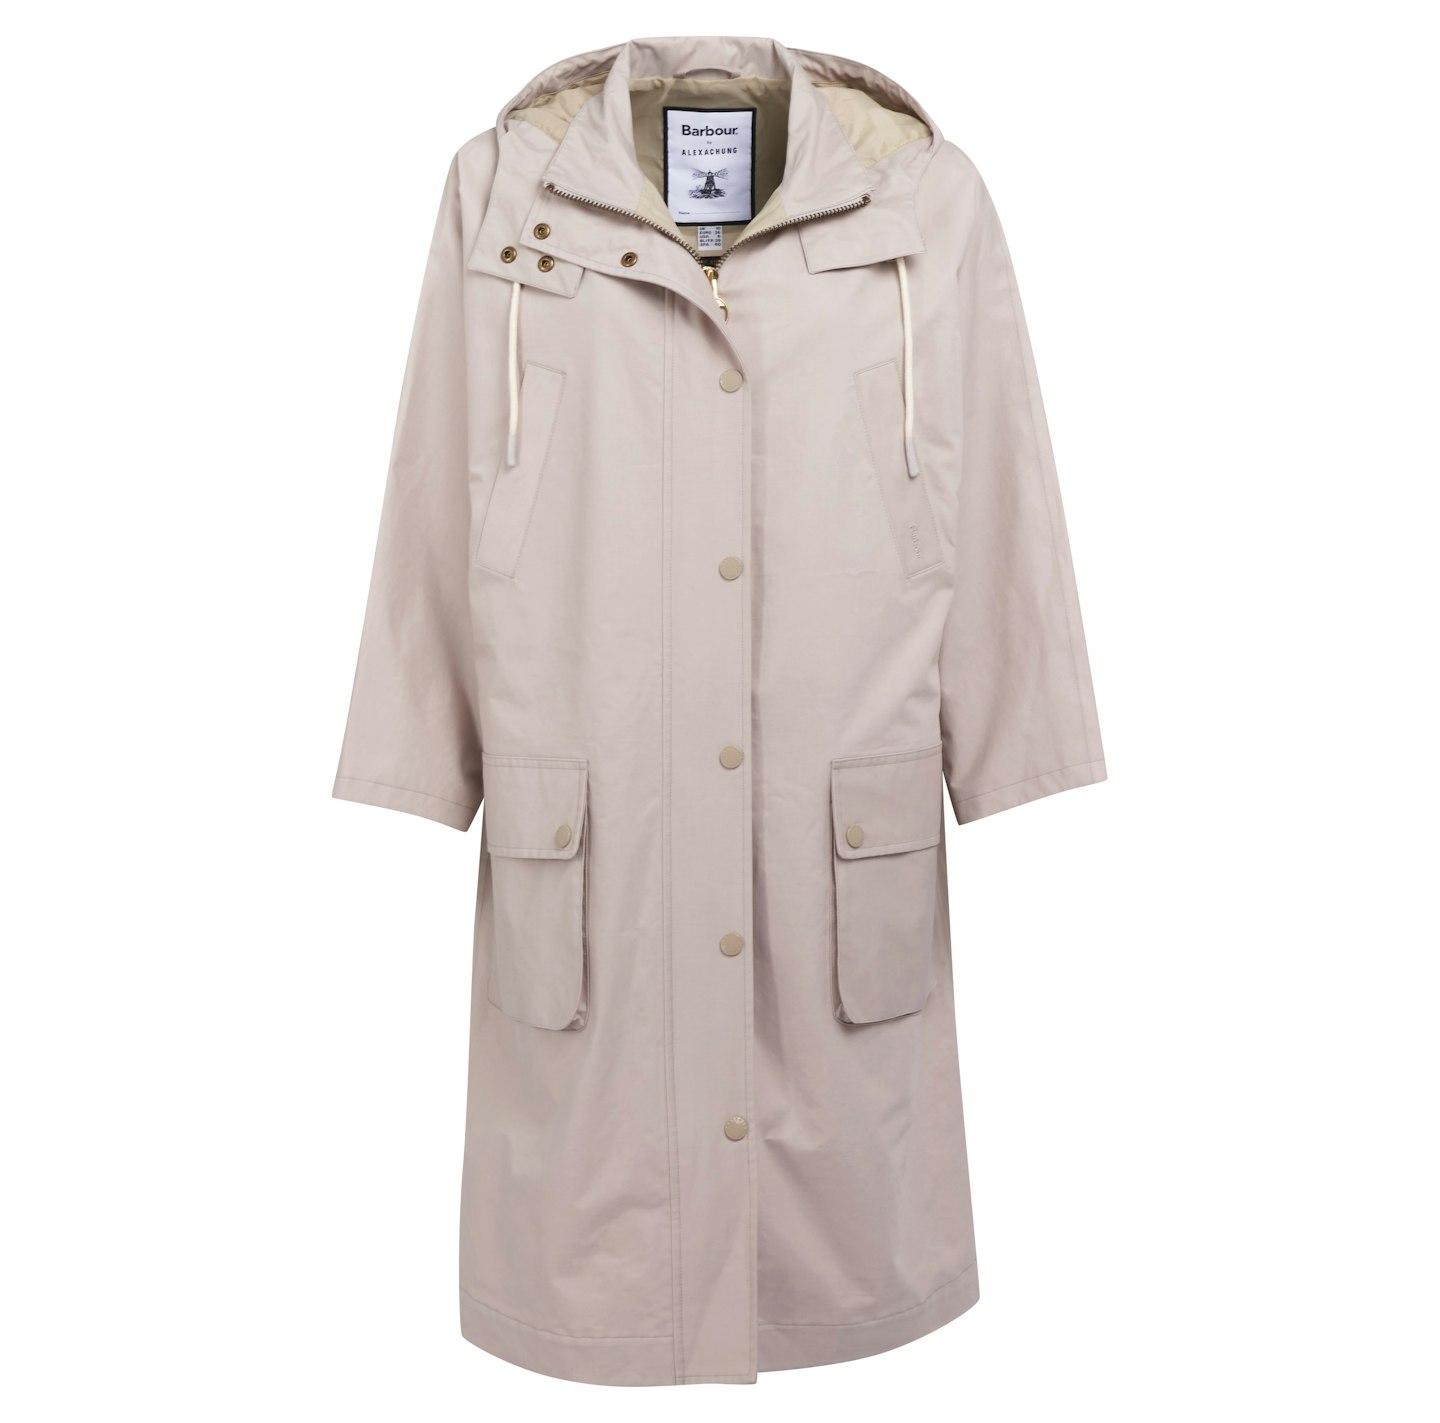 Earnest Jacket, £349